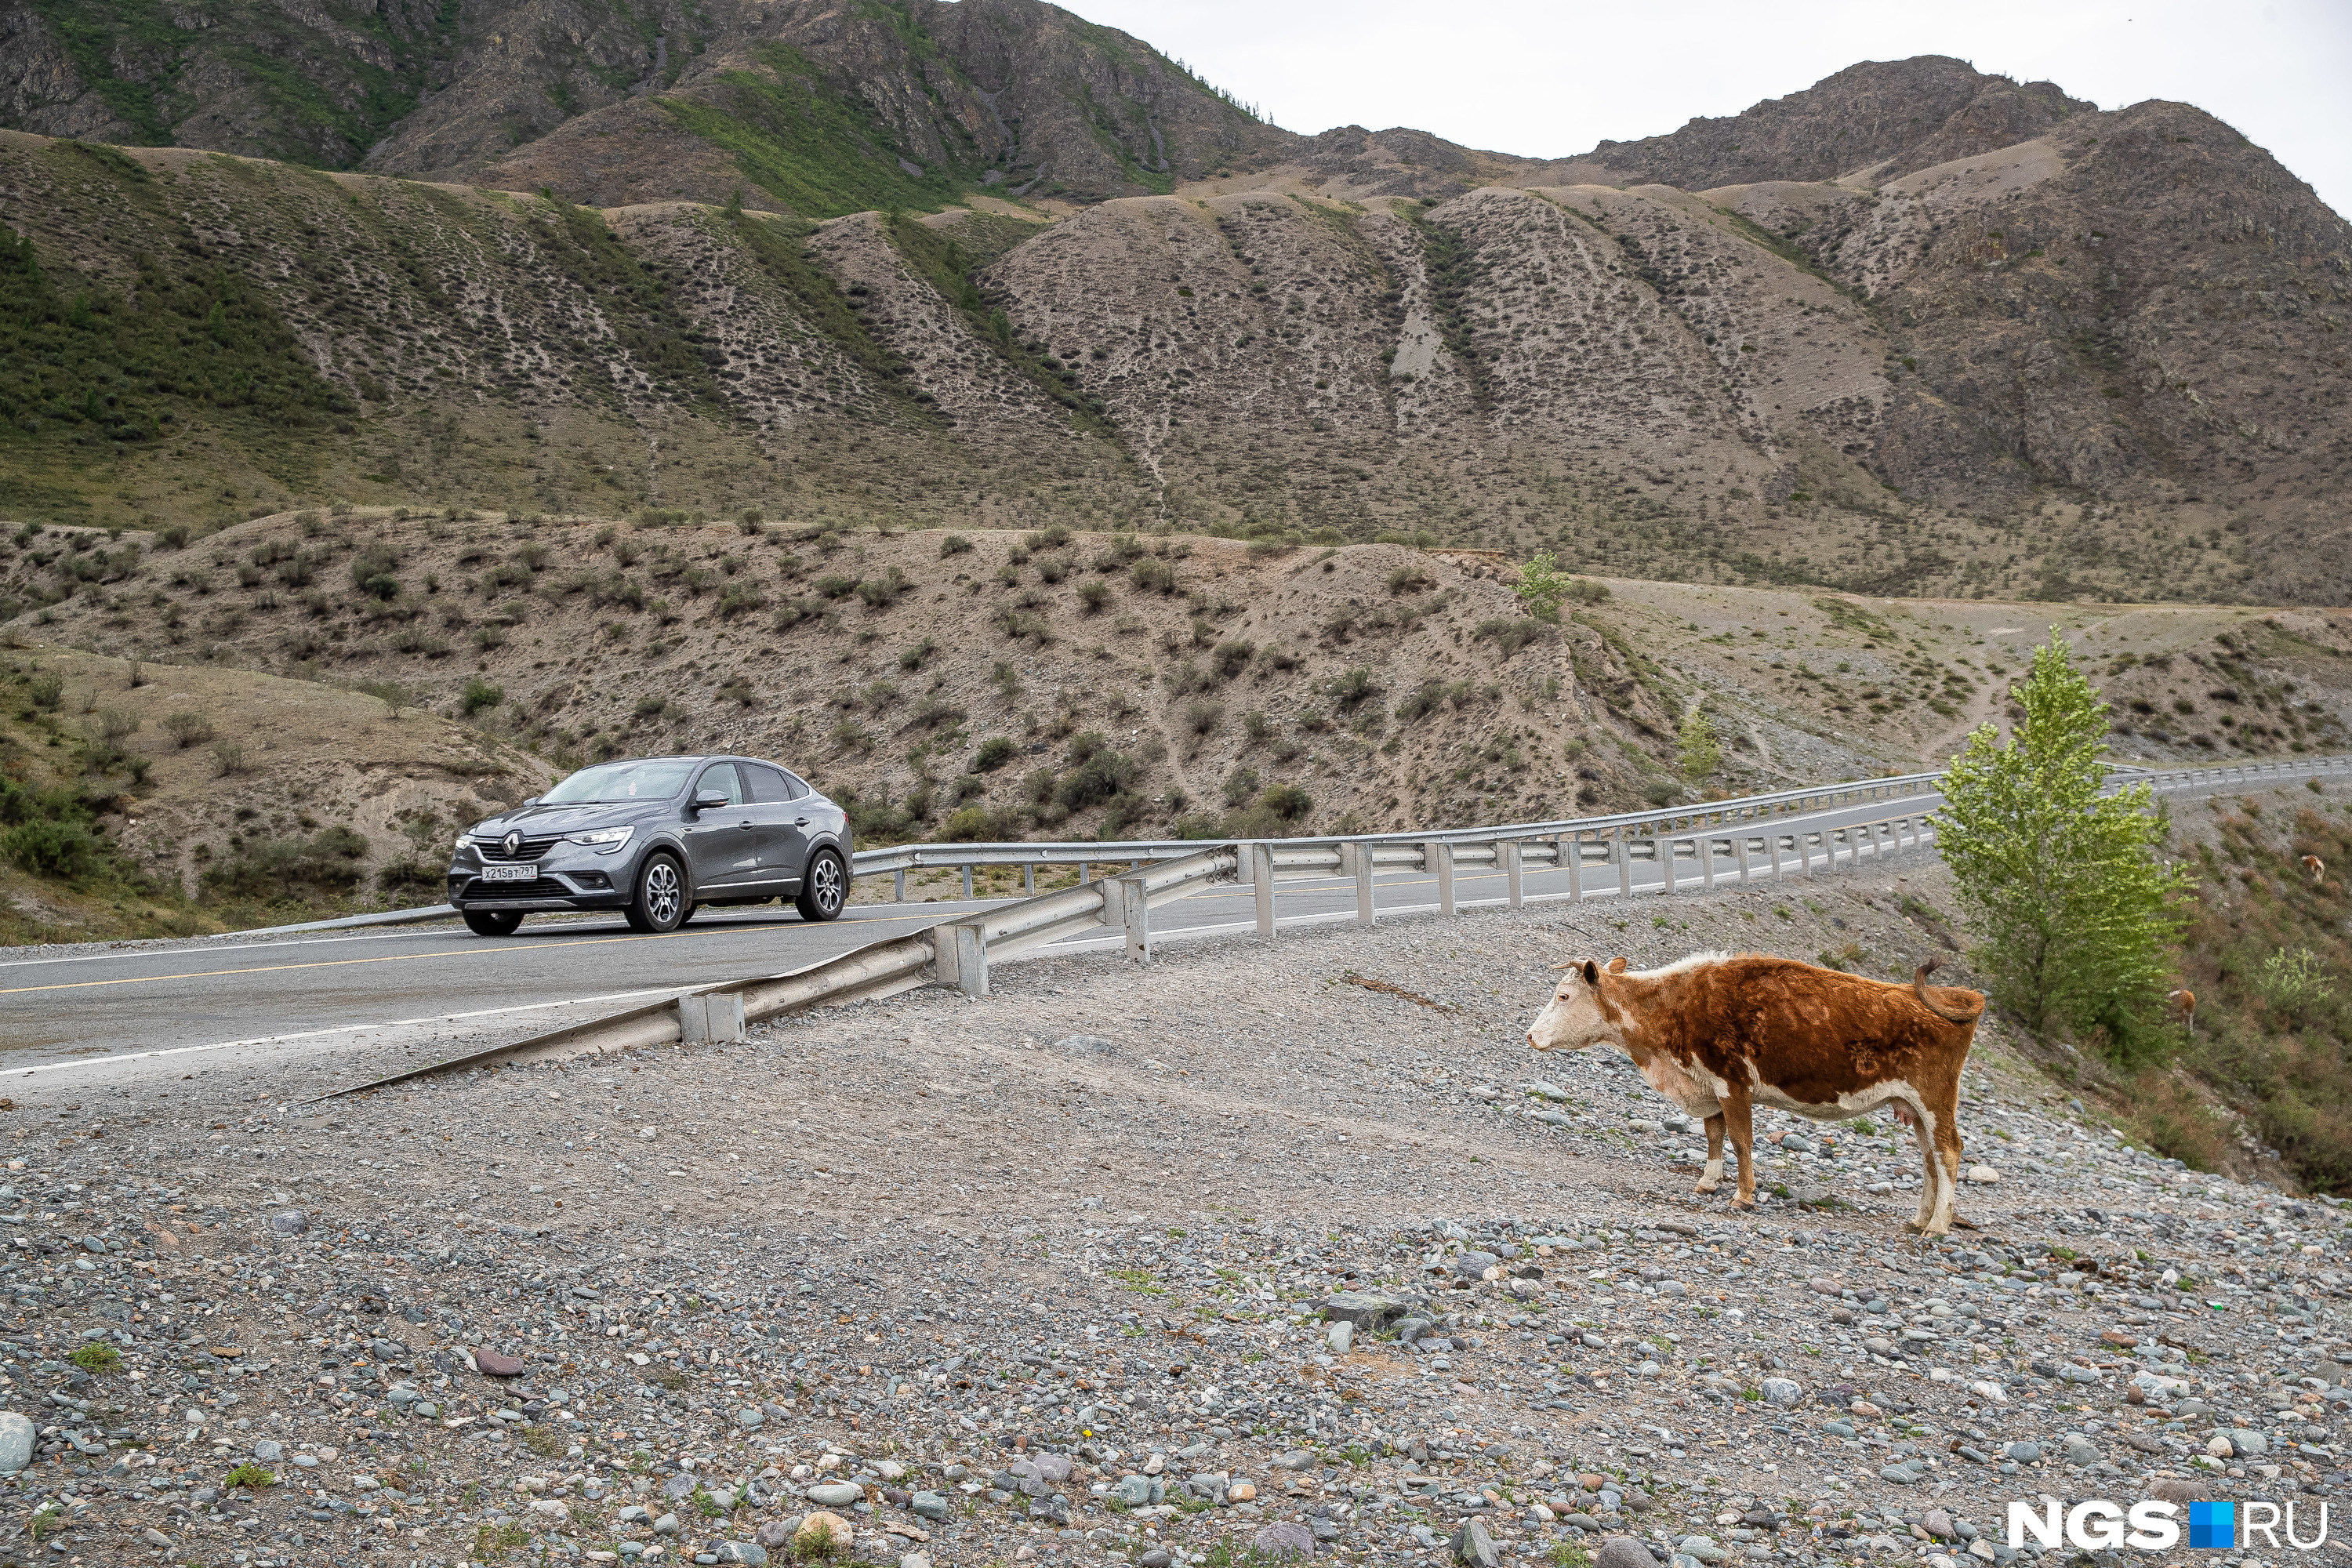 Рыжие коровы сопровождают туристов даже в совсем диких районах